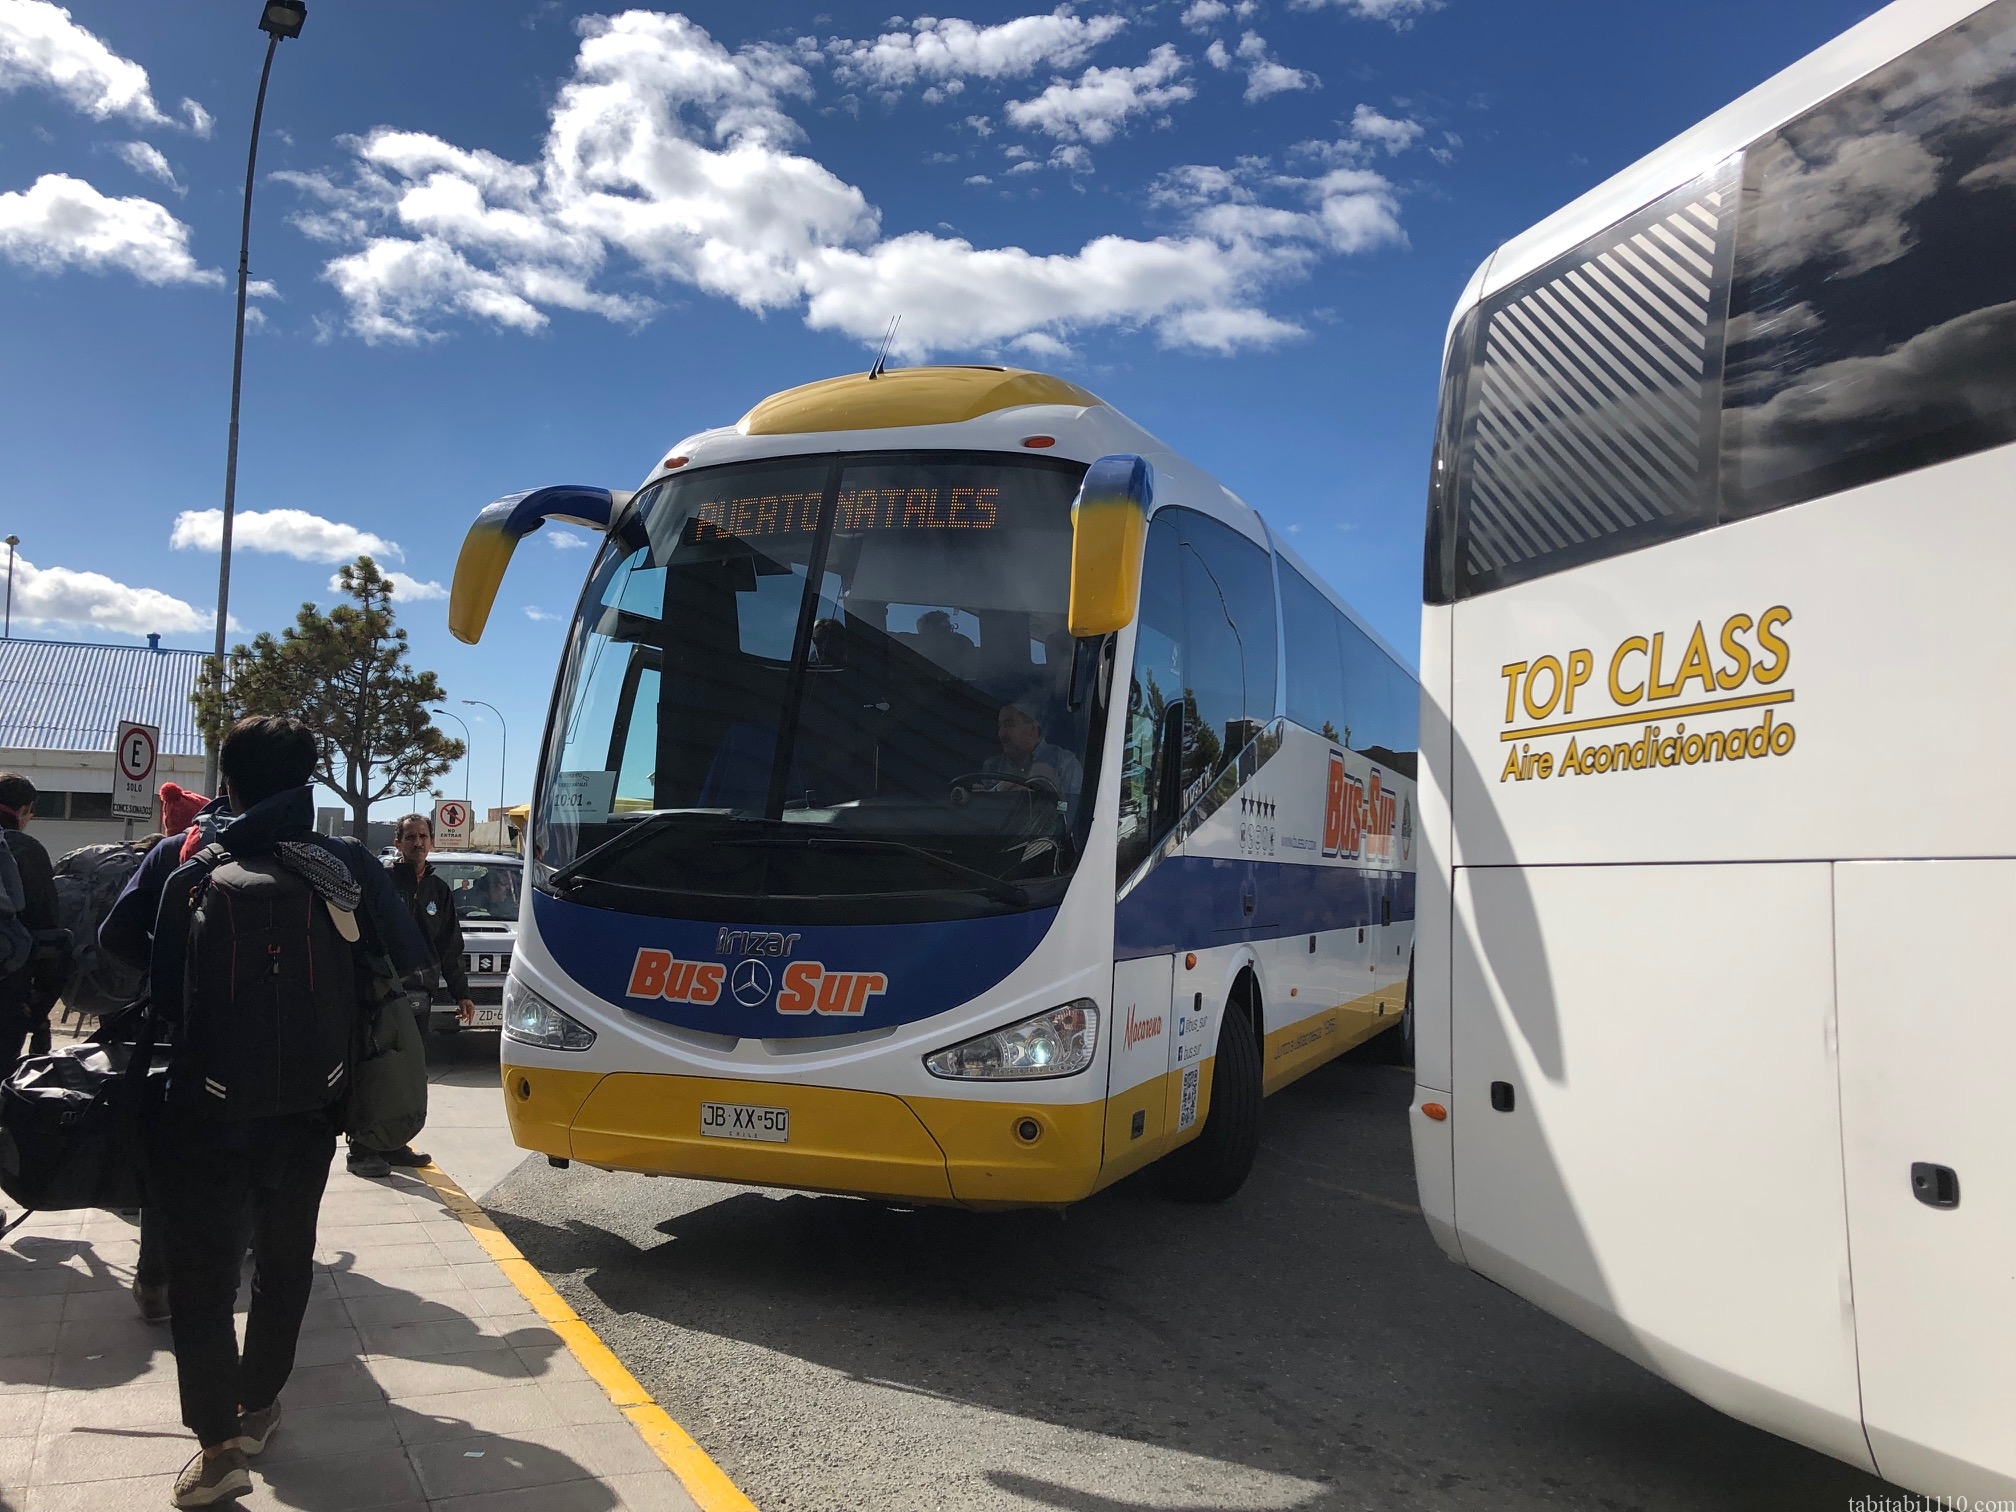 プンタアレナス空港 プエルトナタレス バス